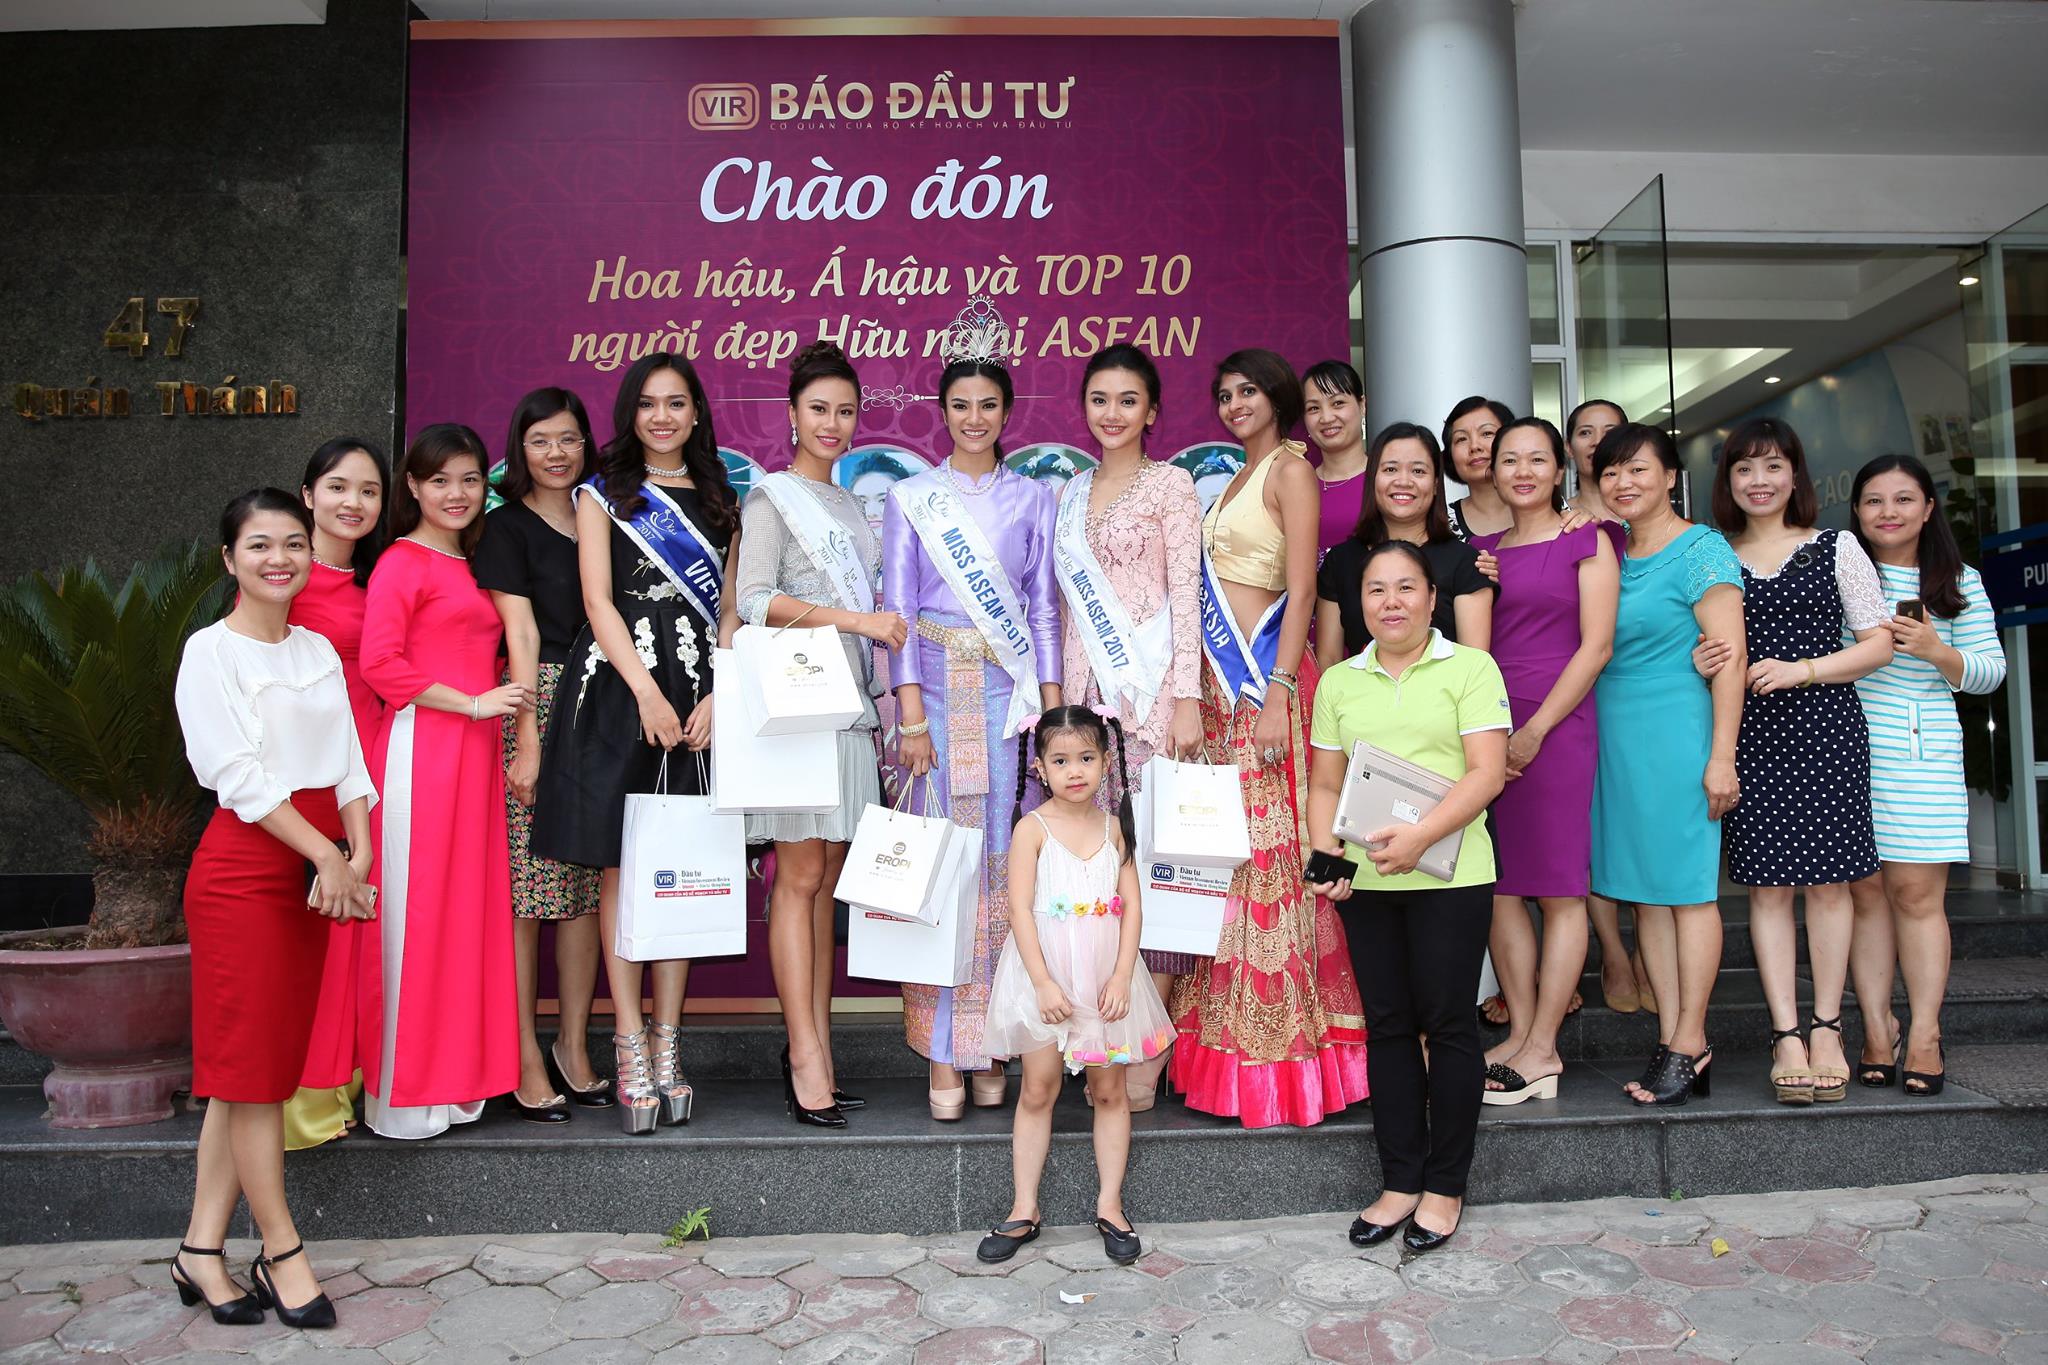   Cuộc thi Hoa hậu Hữu nghị ASEAN 2017 - Miss ASEAN Friendship 2017 lần đầu tiên tổ chức tại Việt Nam nhận được sự cho phép của Bộ Văn hoá, Thể thao và Du lịch, tỉnh Phú Yên đăng cai và Báo Đầu tư/VIR, Timeout bảo trợ truyền thông, cùng sự đồng hành của các đơn vị truyền thông hàng đầu như Báo Công An Đà Nẵng, Đài truyền hình Việt Nam và Tạp chí Thời Trang Trẻ